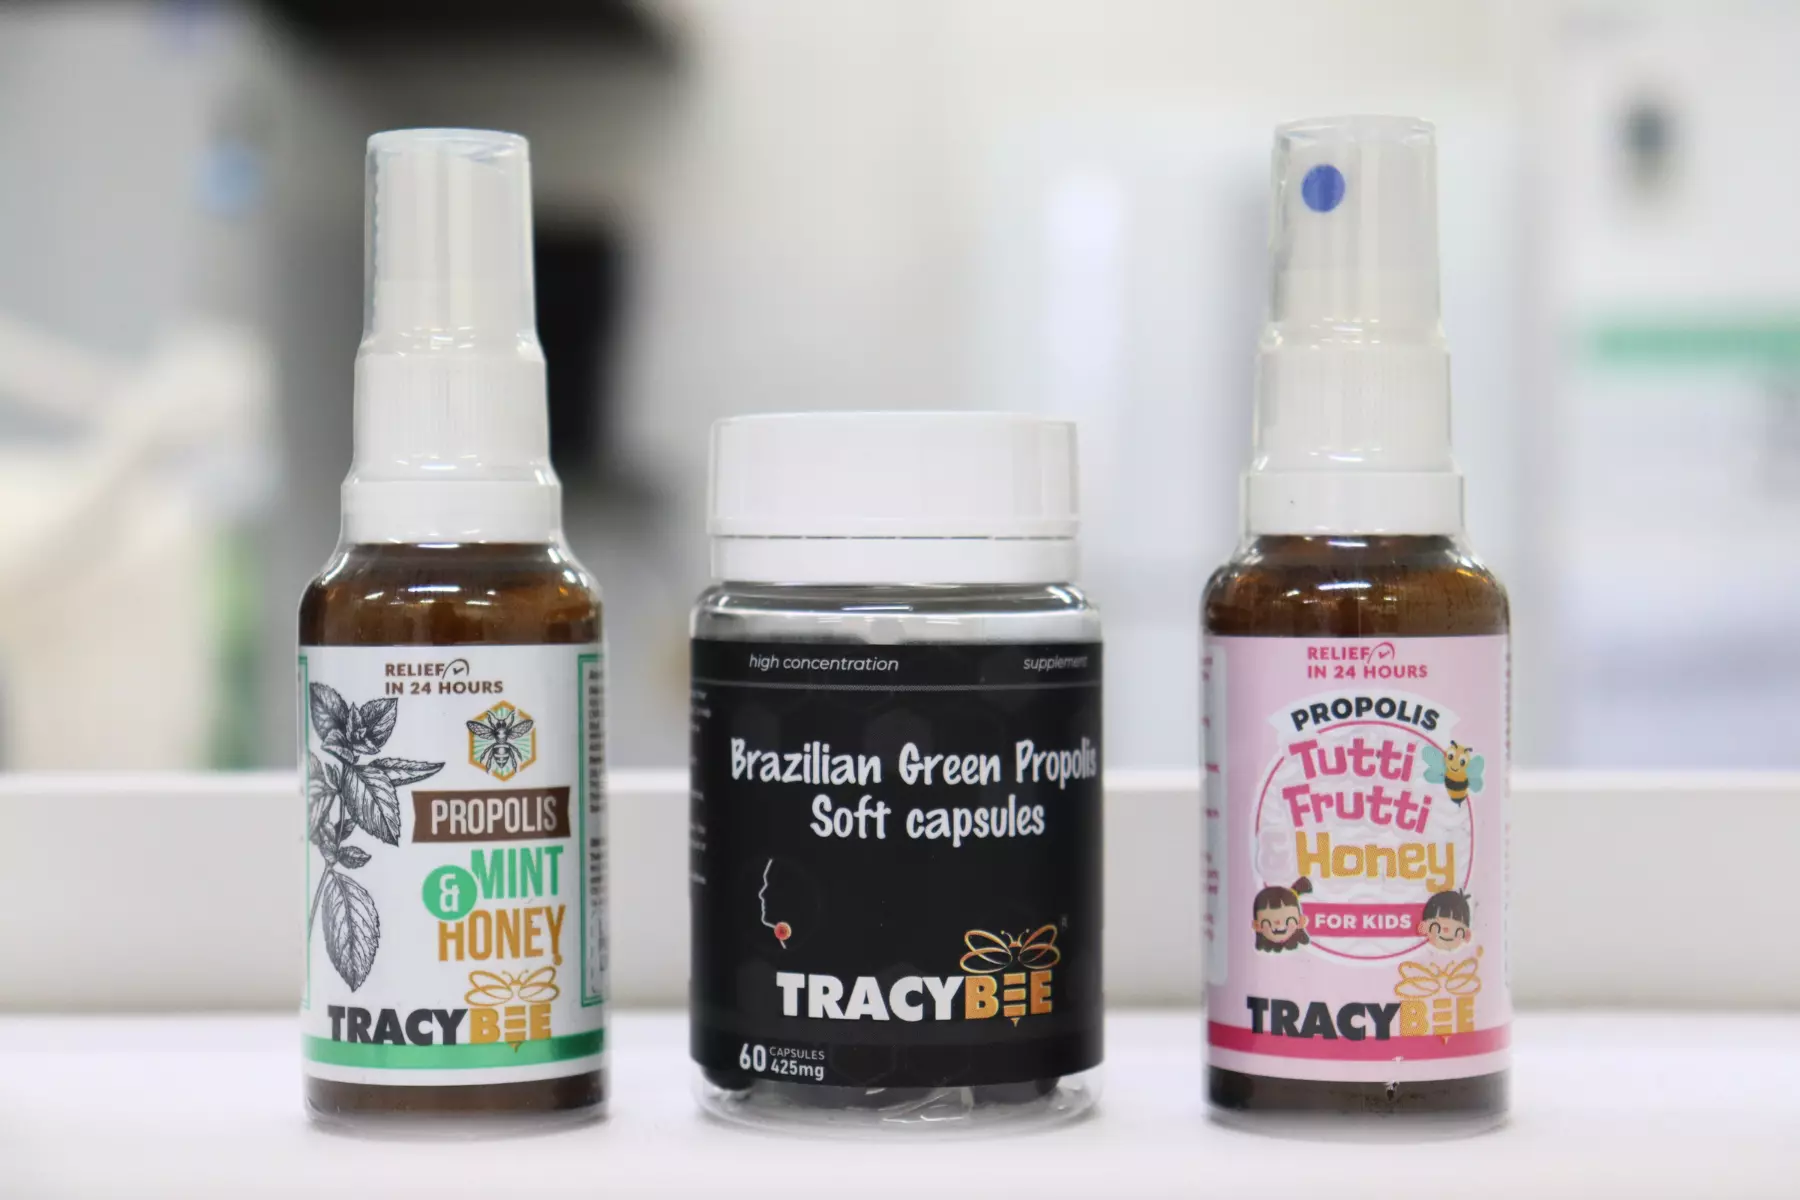 Keo ong Tracybee hiện là dòng chăm sóc sức khoẻ bán chạy tại nhà thuốc